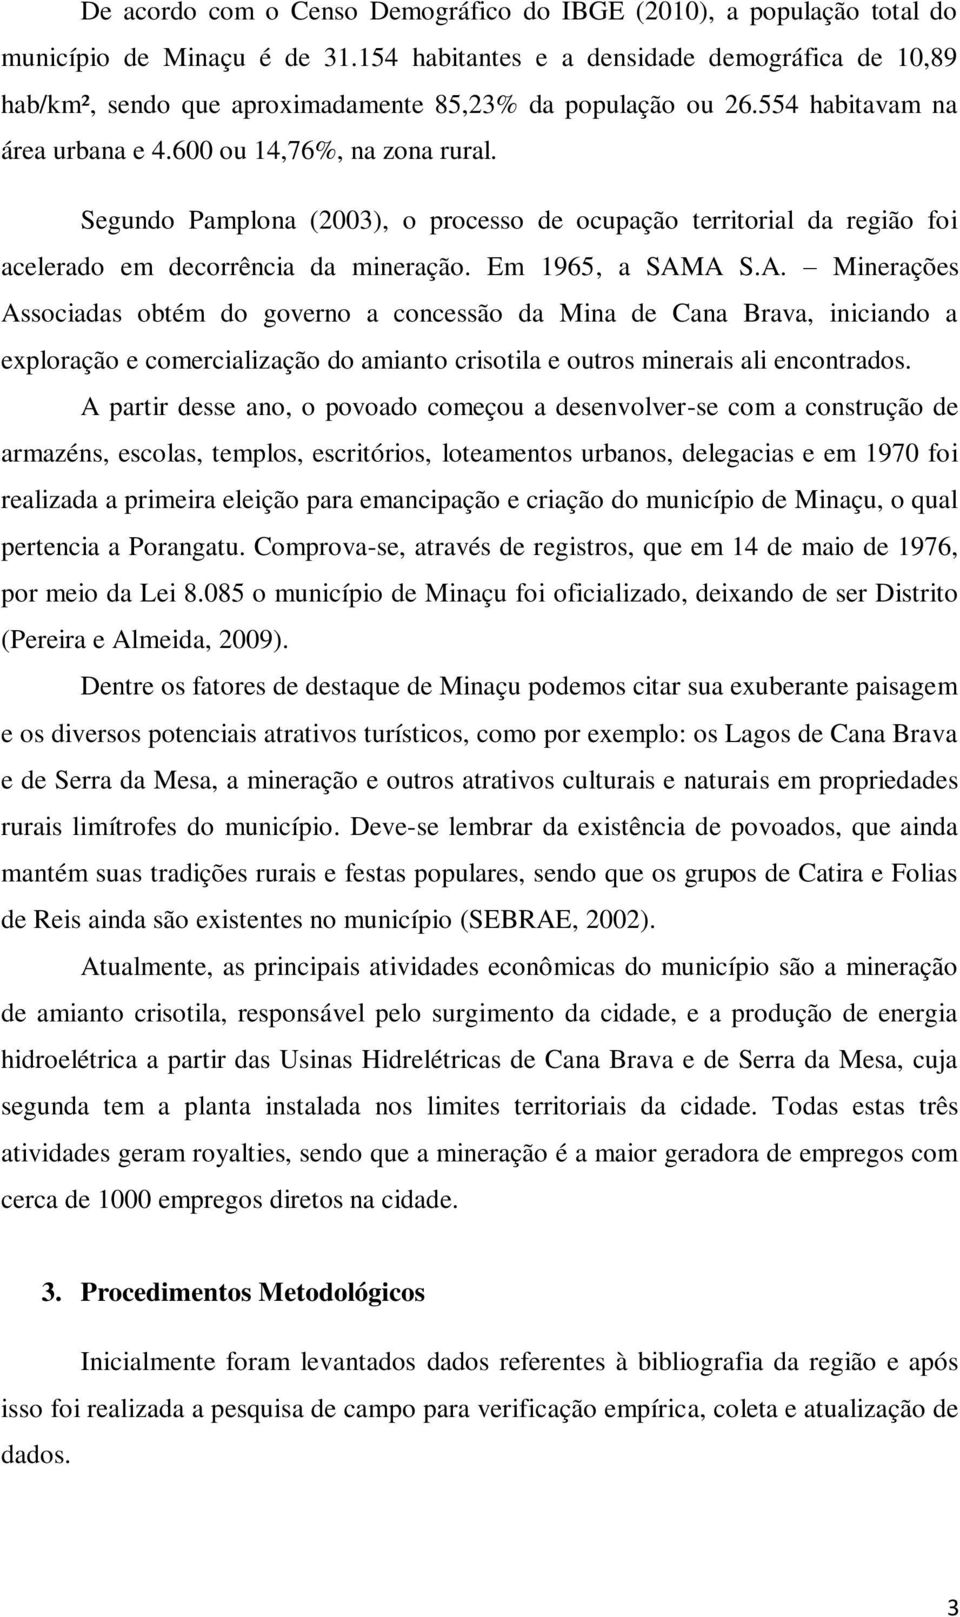 Segundo Pamplona (2003), o processo de ocupação territorial da região foi acelerado em decorrência da mineração. Em 1965, a SAM